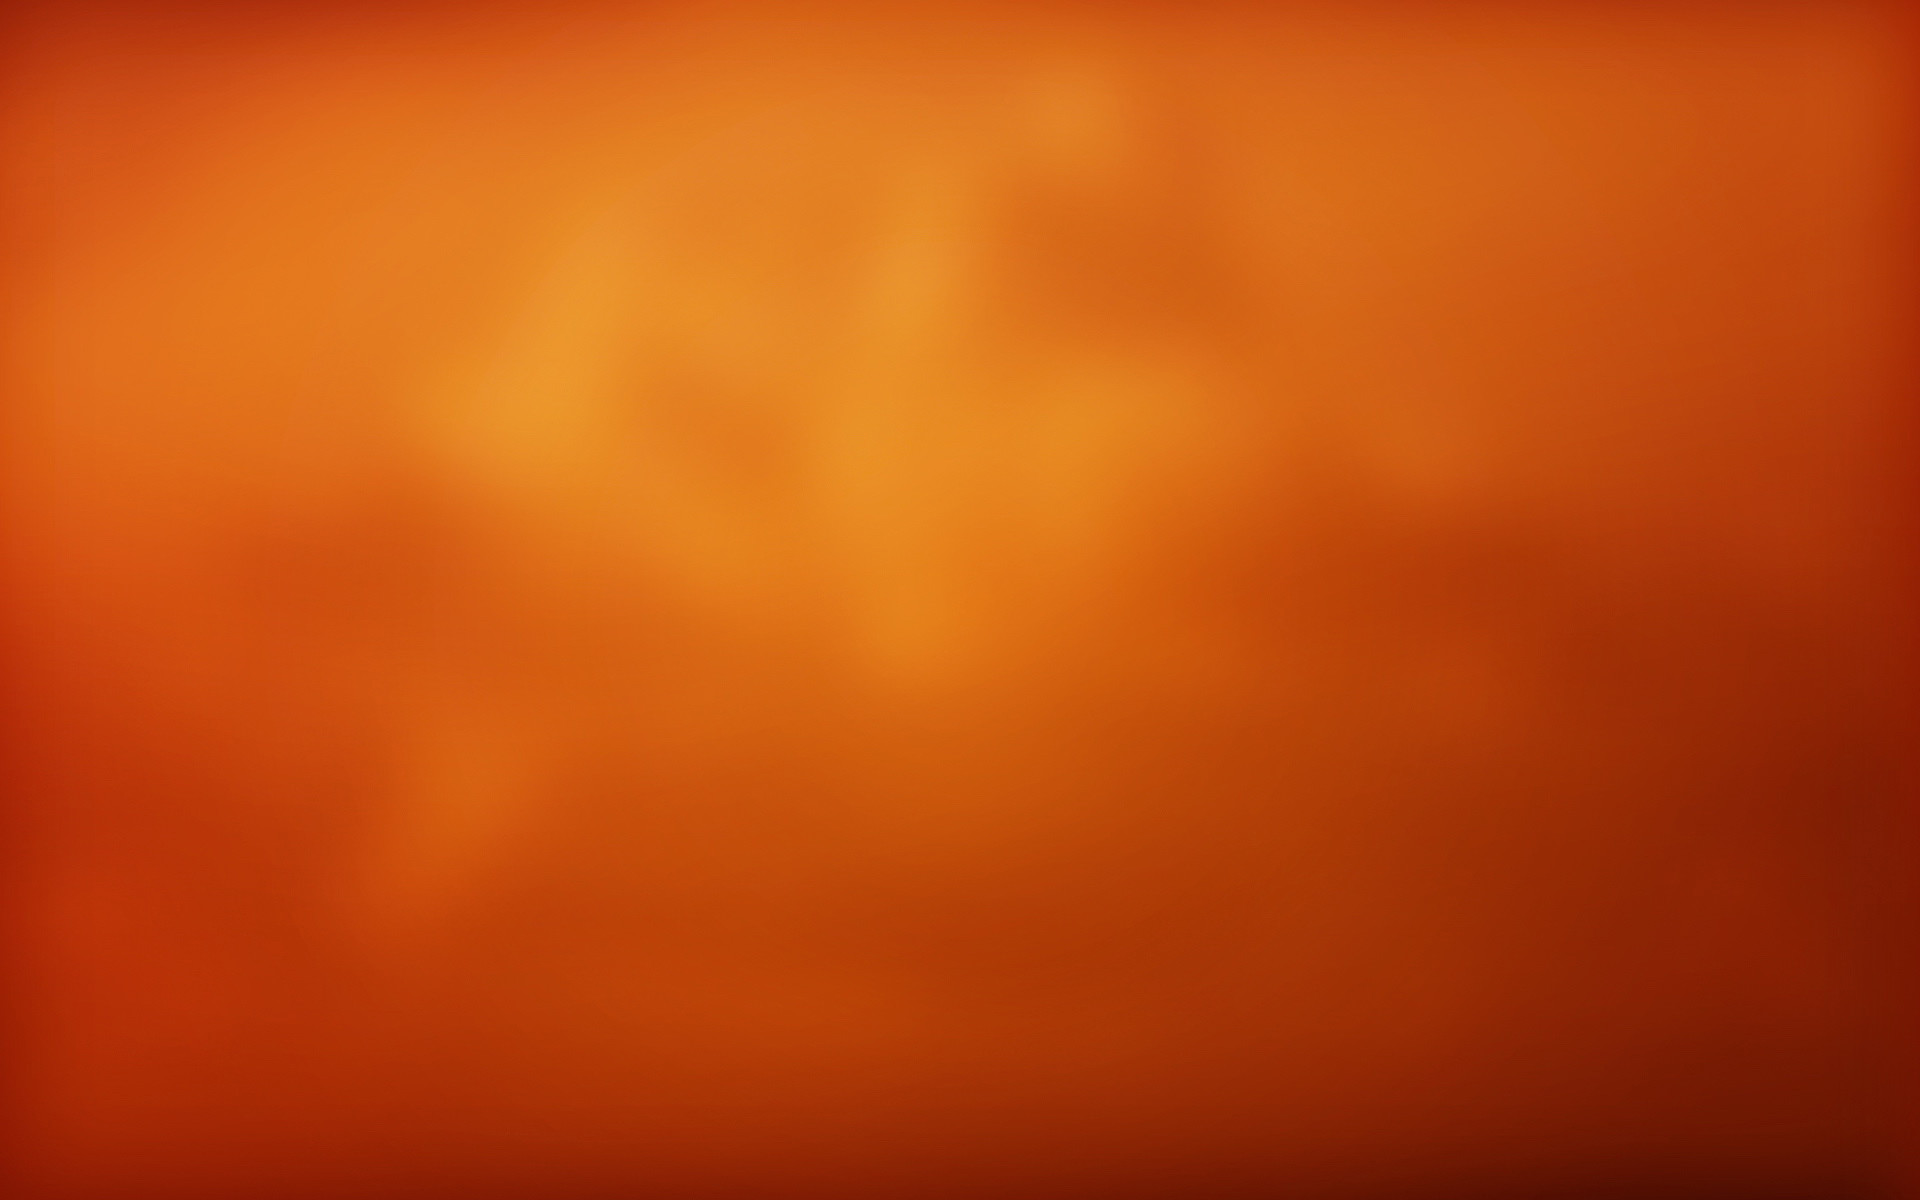 Orange Desktop Backgrounds (70 Wallpapers)